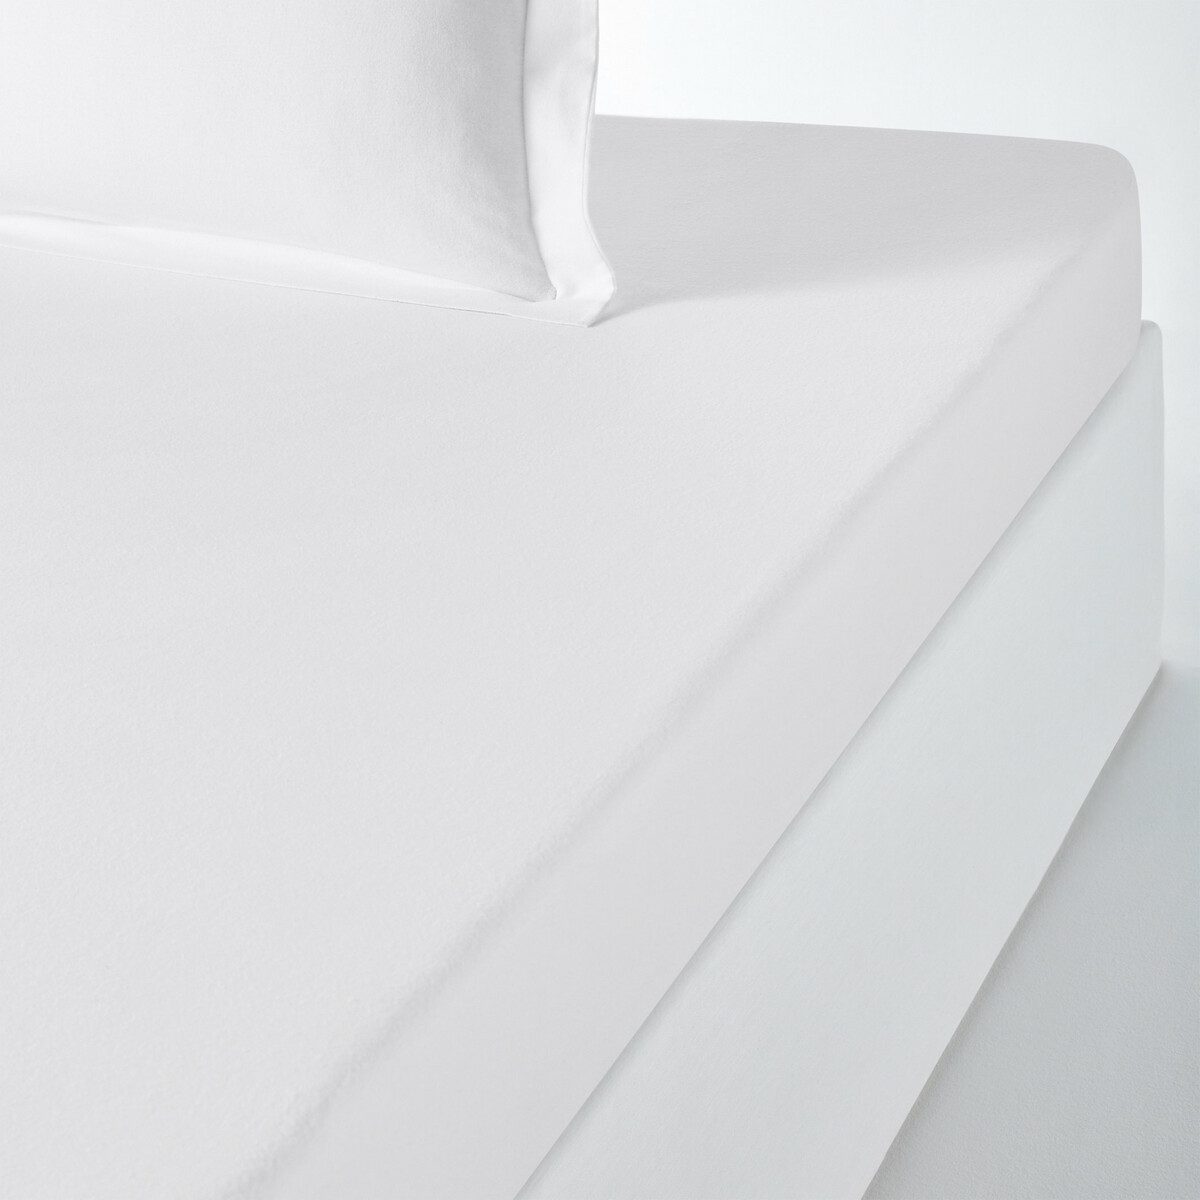 Простыня LaRedoute Натяжная фланелевая из 100 хлопка для детской кроватки Scenario 90 x 190 см белый, размер 90 x 190 см - фото 1